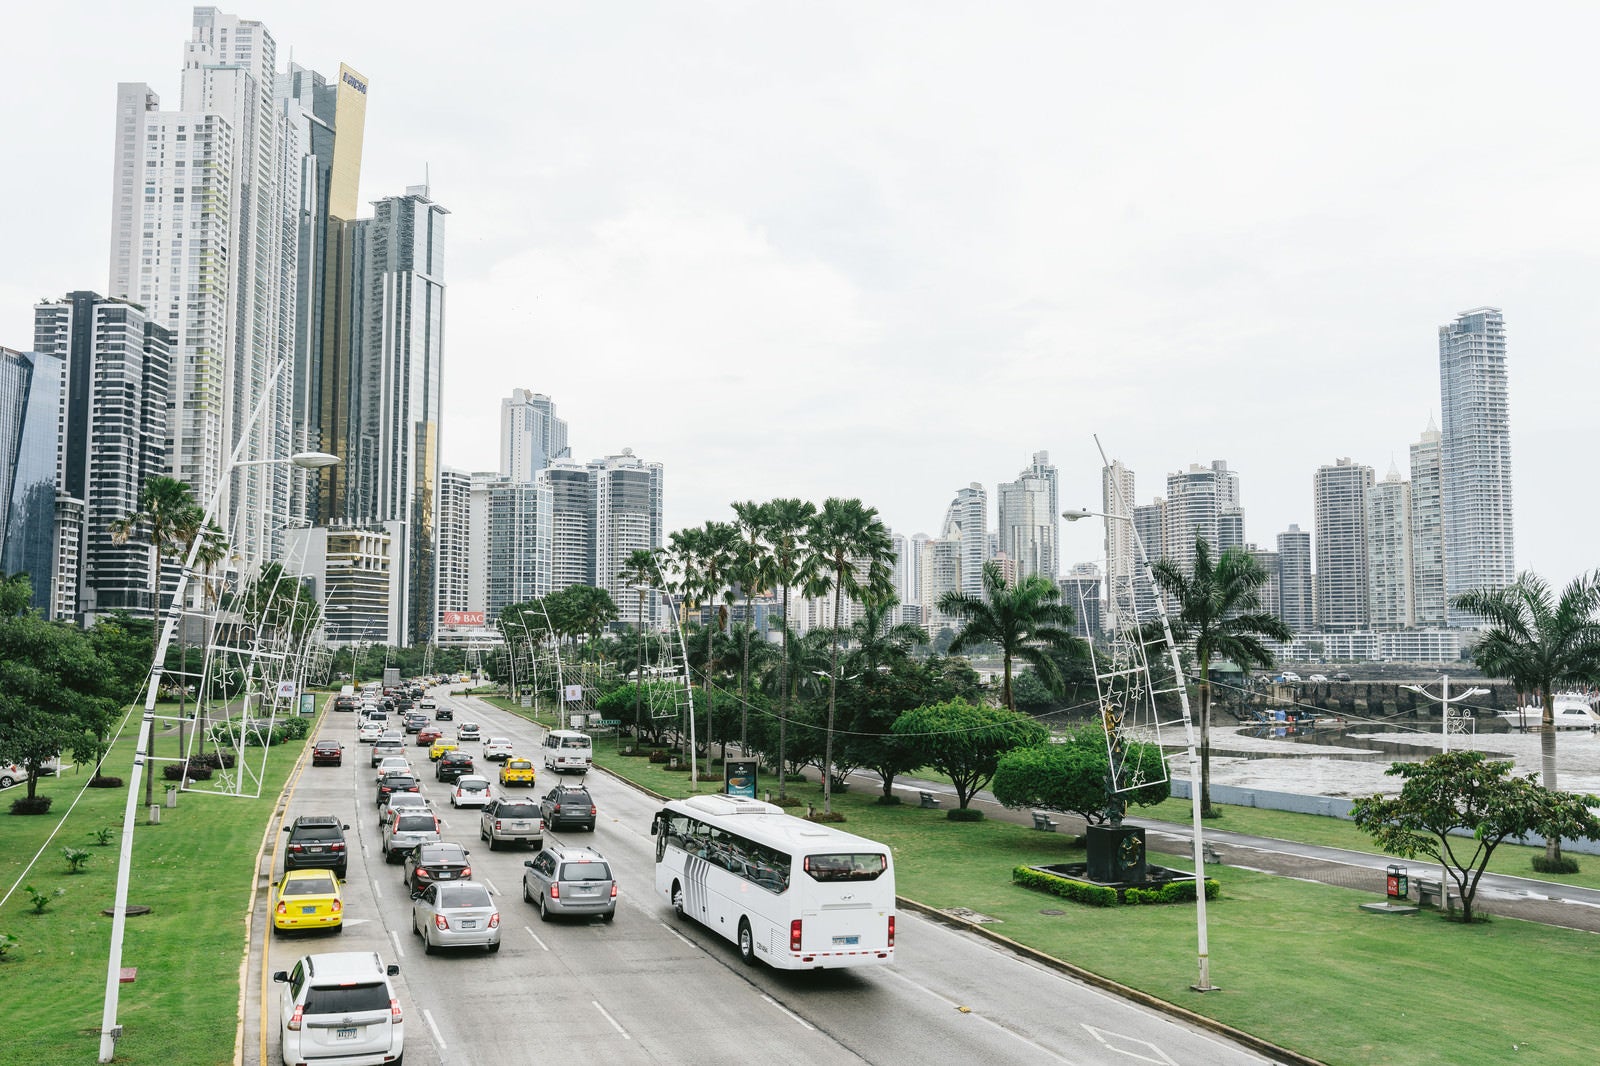 「新興国「パナマ」の街並み」の写真